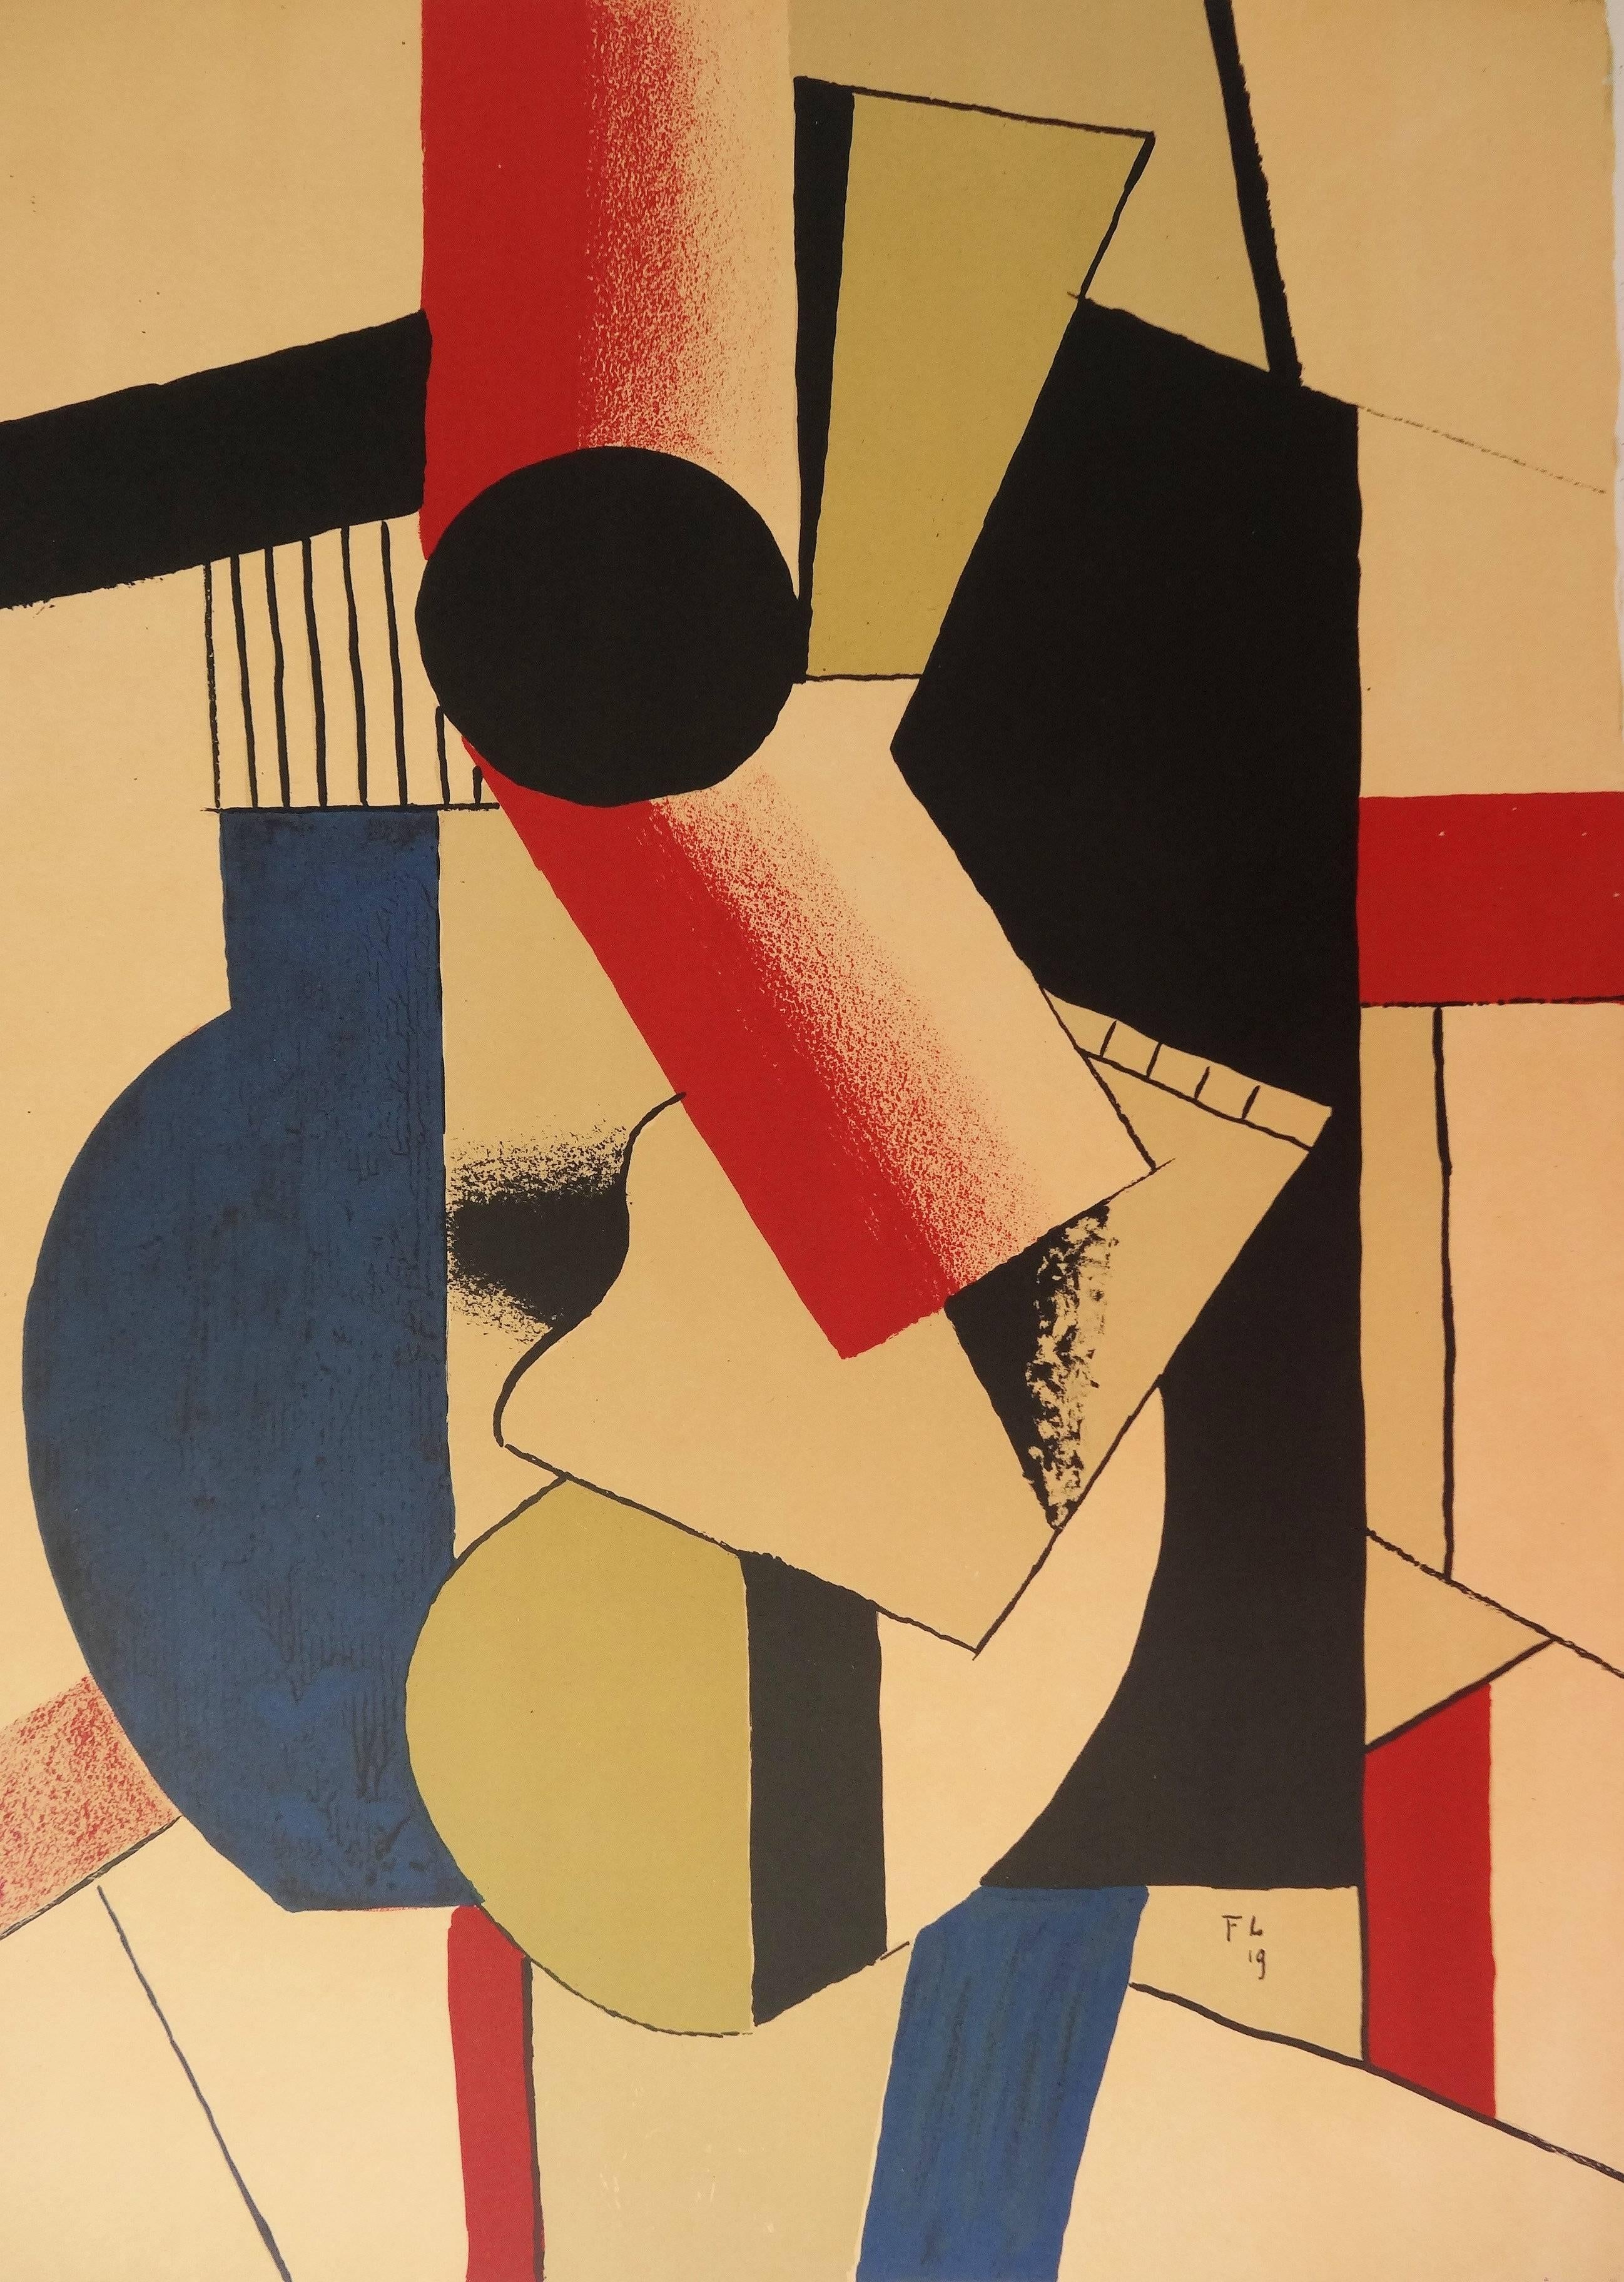 Kubistisches Gitarre – Lithographieplakat – Berggruen / Mourlot 1979 (Geometrische Abstraktion), Print, von (after) Fernand Léger